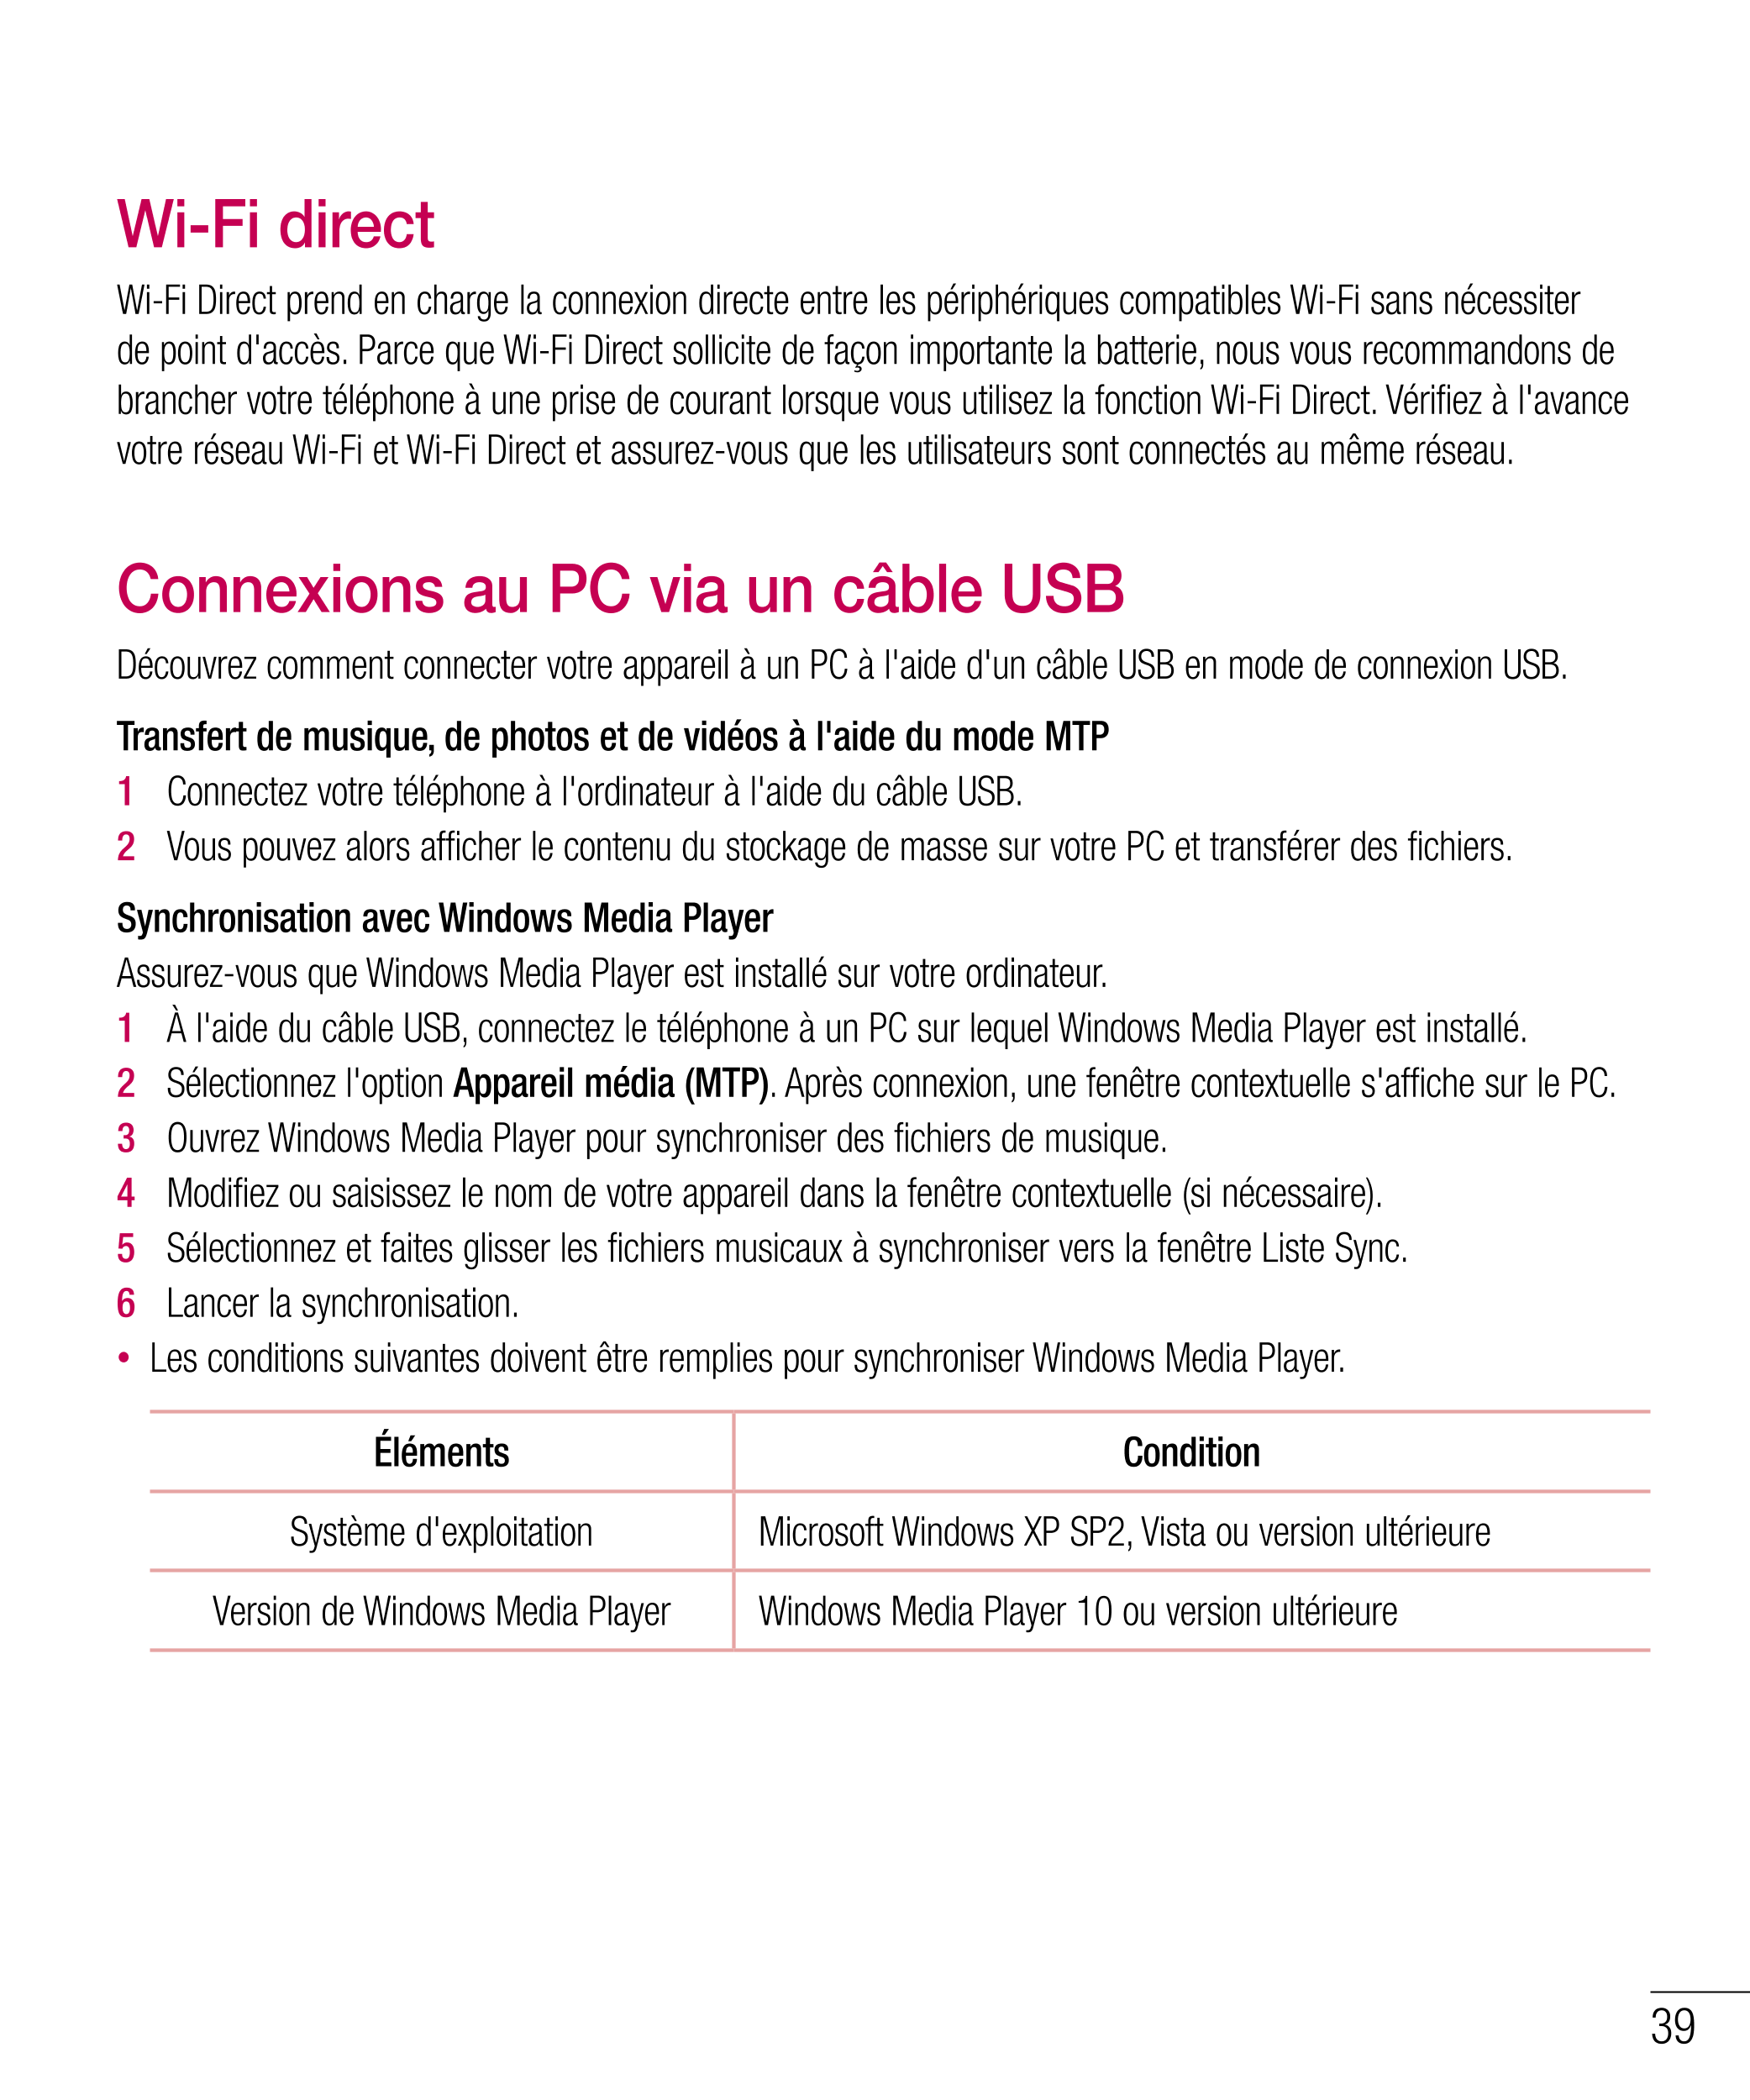 Wi-Fi direct
Wi-Fi Direct prend en charge la connexion directe entre les périphériques compatibles Wi-Fi sans nécessiter 
de poi